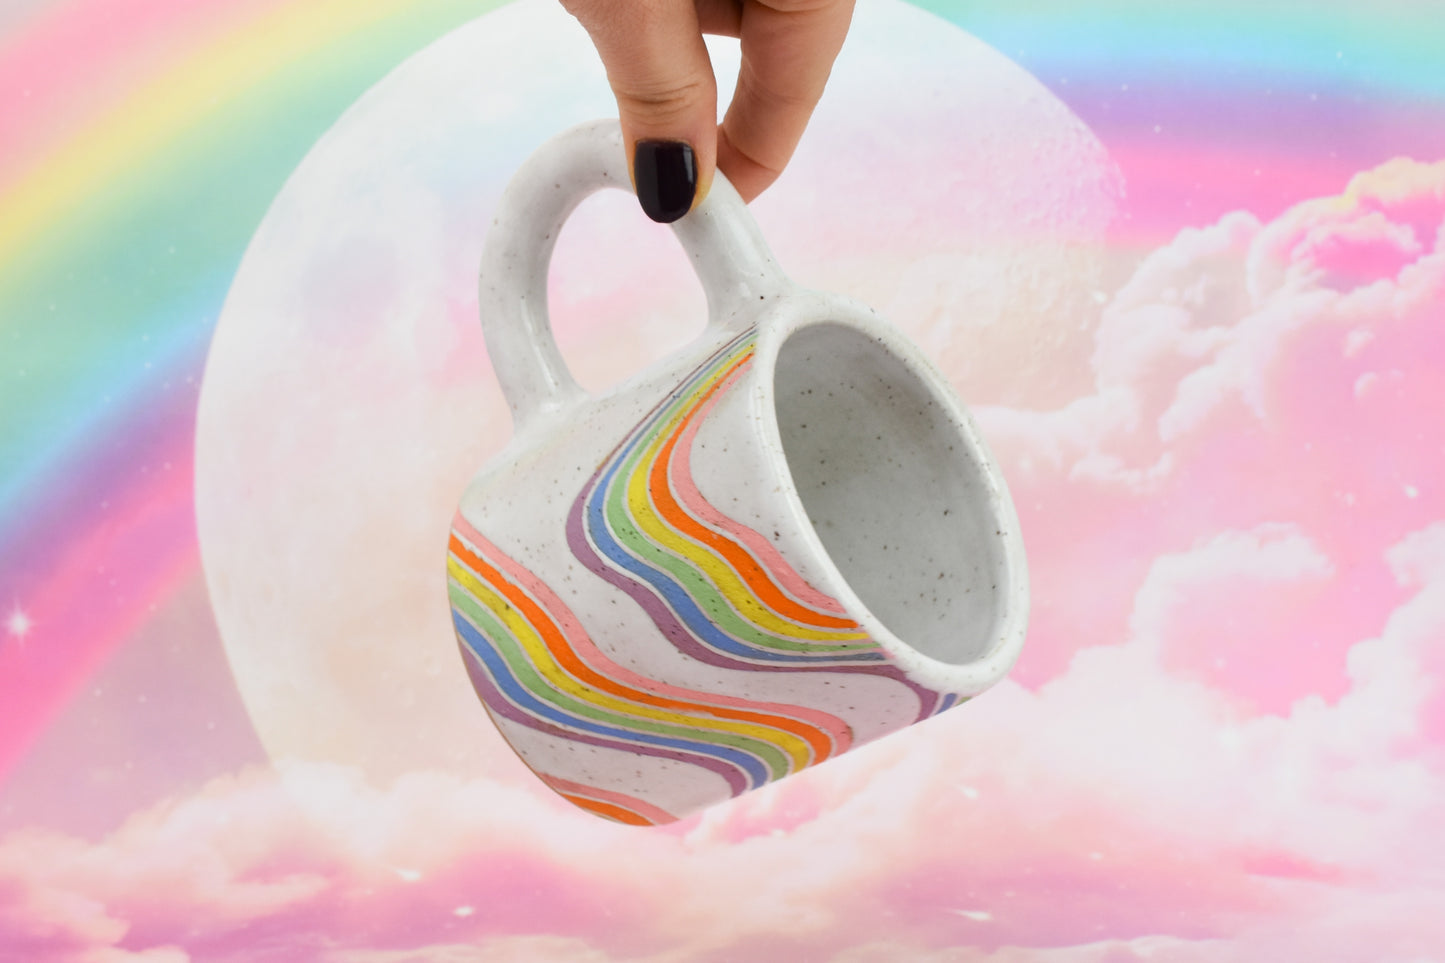 SECOND: Wavy Rainbow Mug